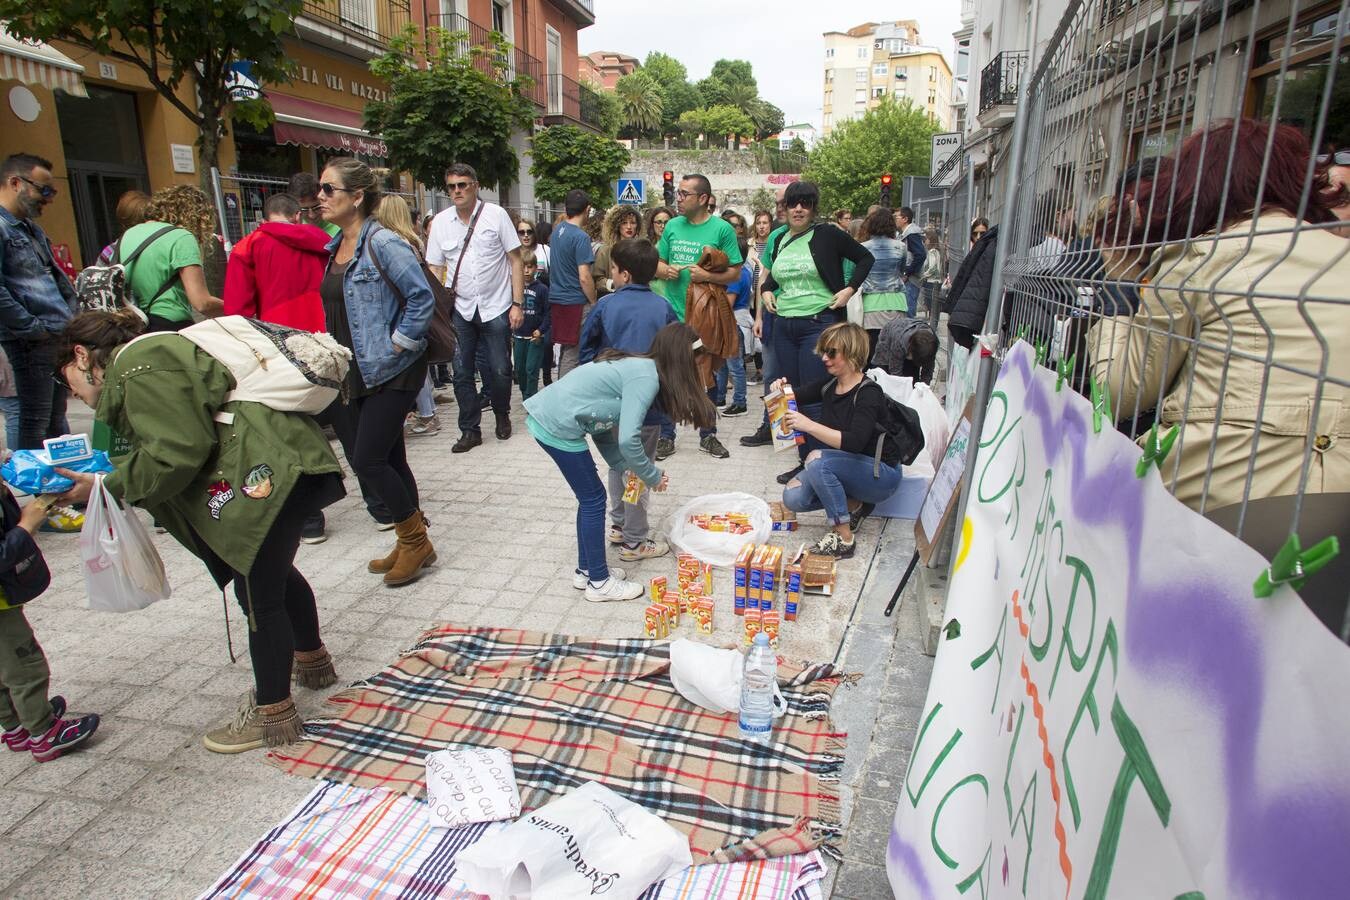 Fotos: Los profesores se manifiestan en Santander en contra de ampliar la jornada reducida